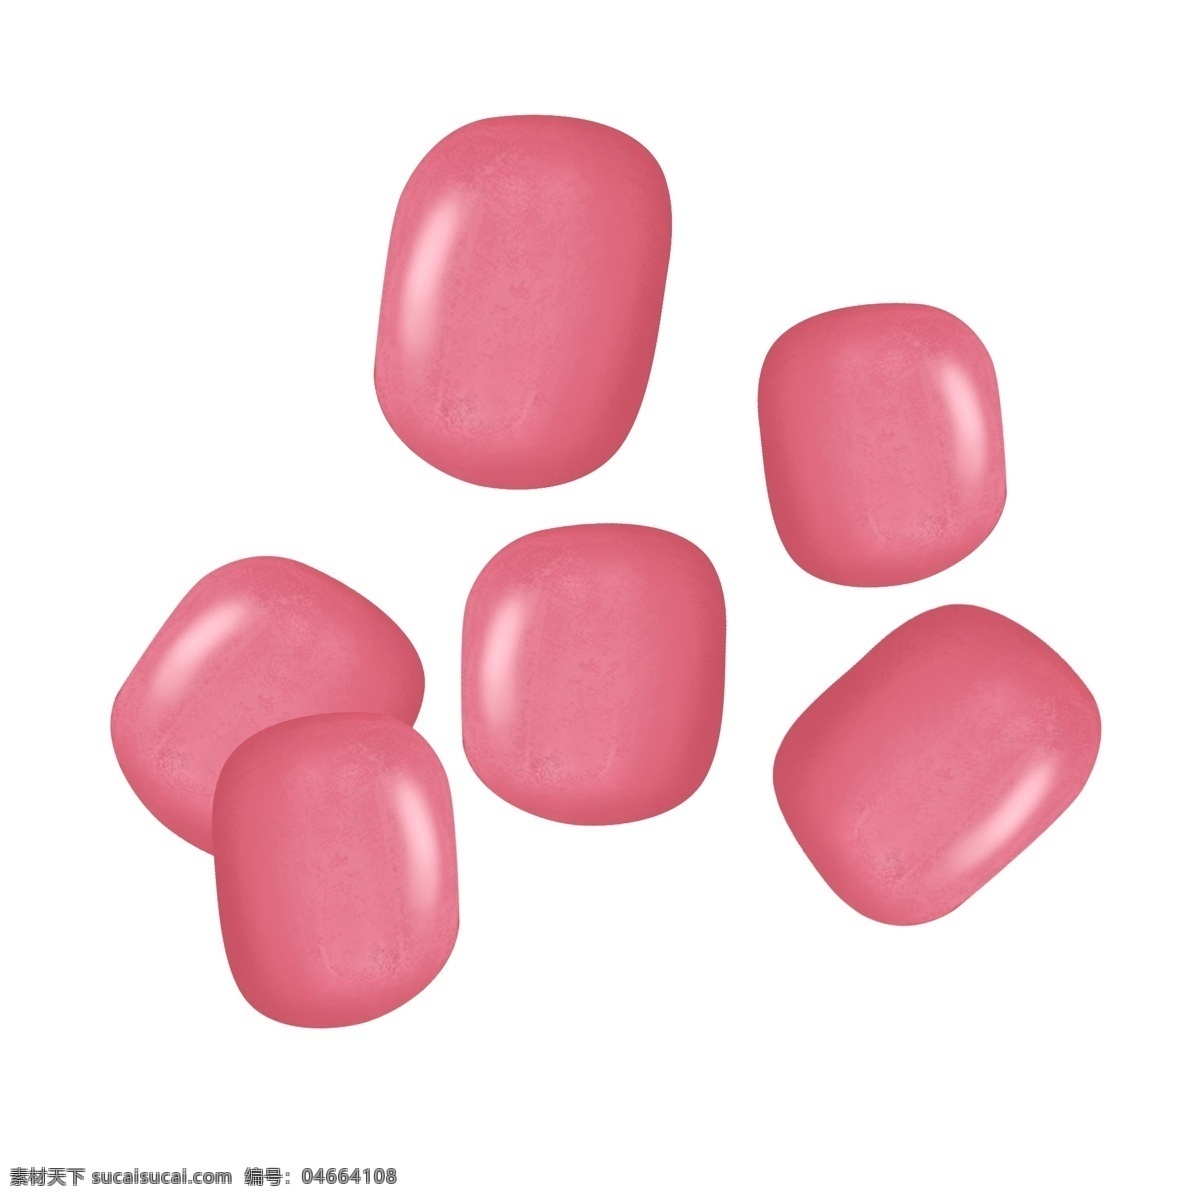 糖果 实物 粉色 草莓 透明 糖豆 糖果实物 透明糖果 一堆糖果 玫瑰色 蜜糖 蜜桃糖 荔枝糖 零食美味